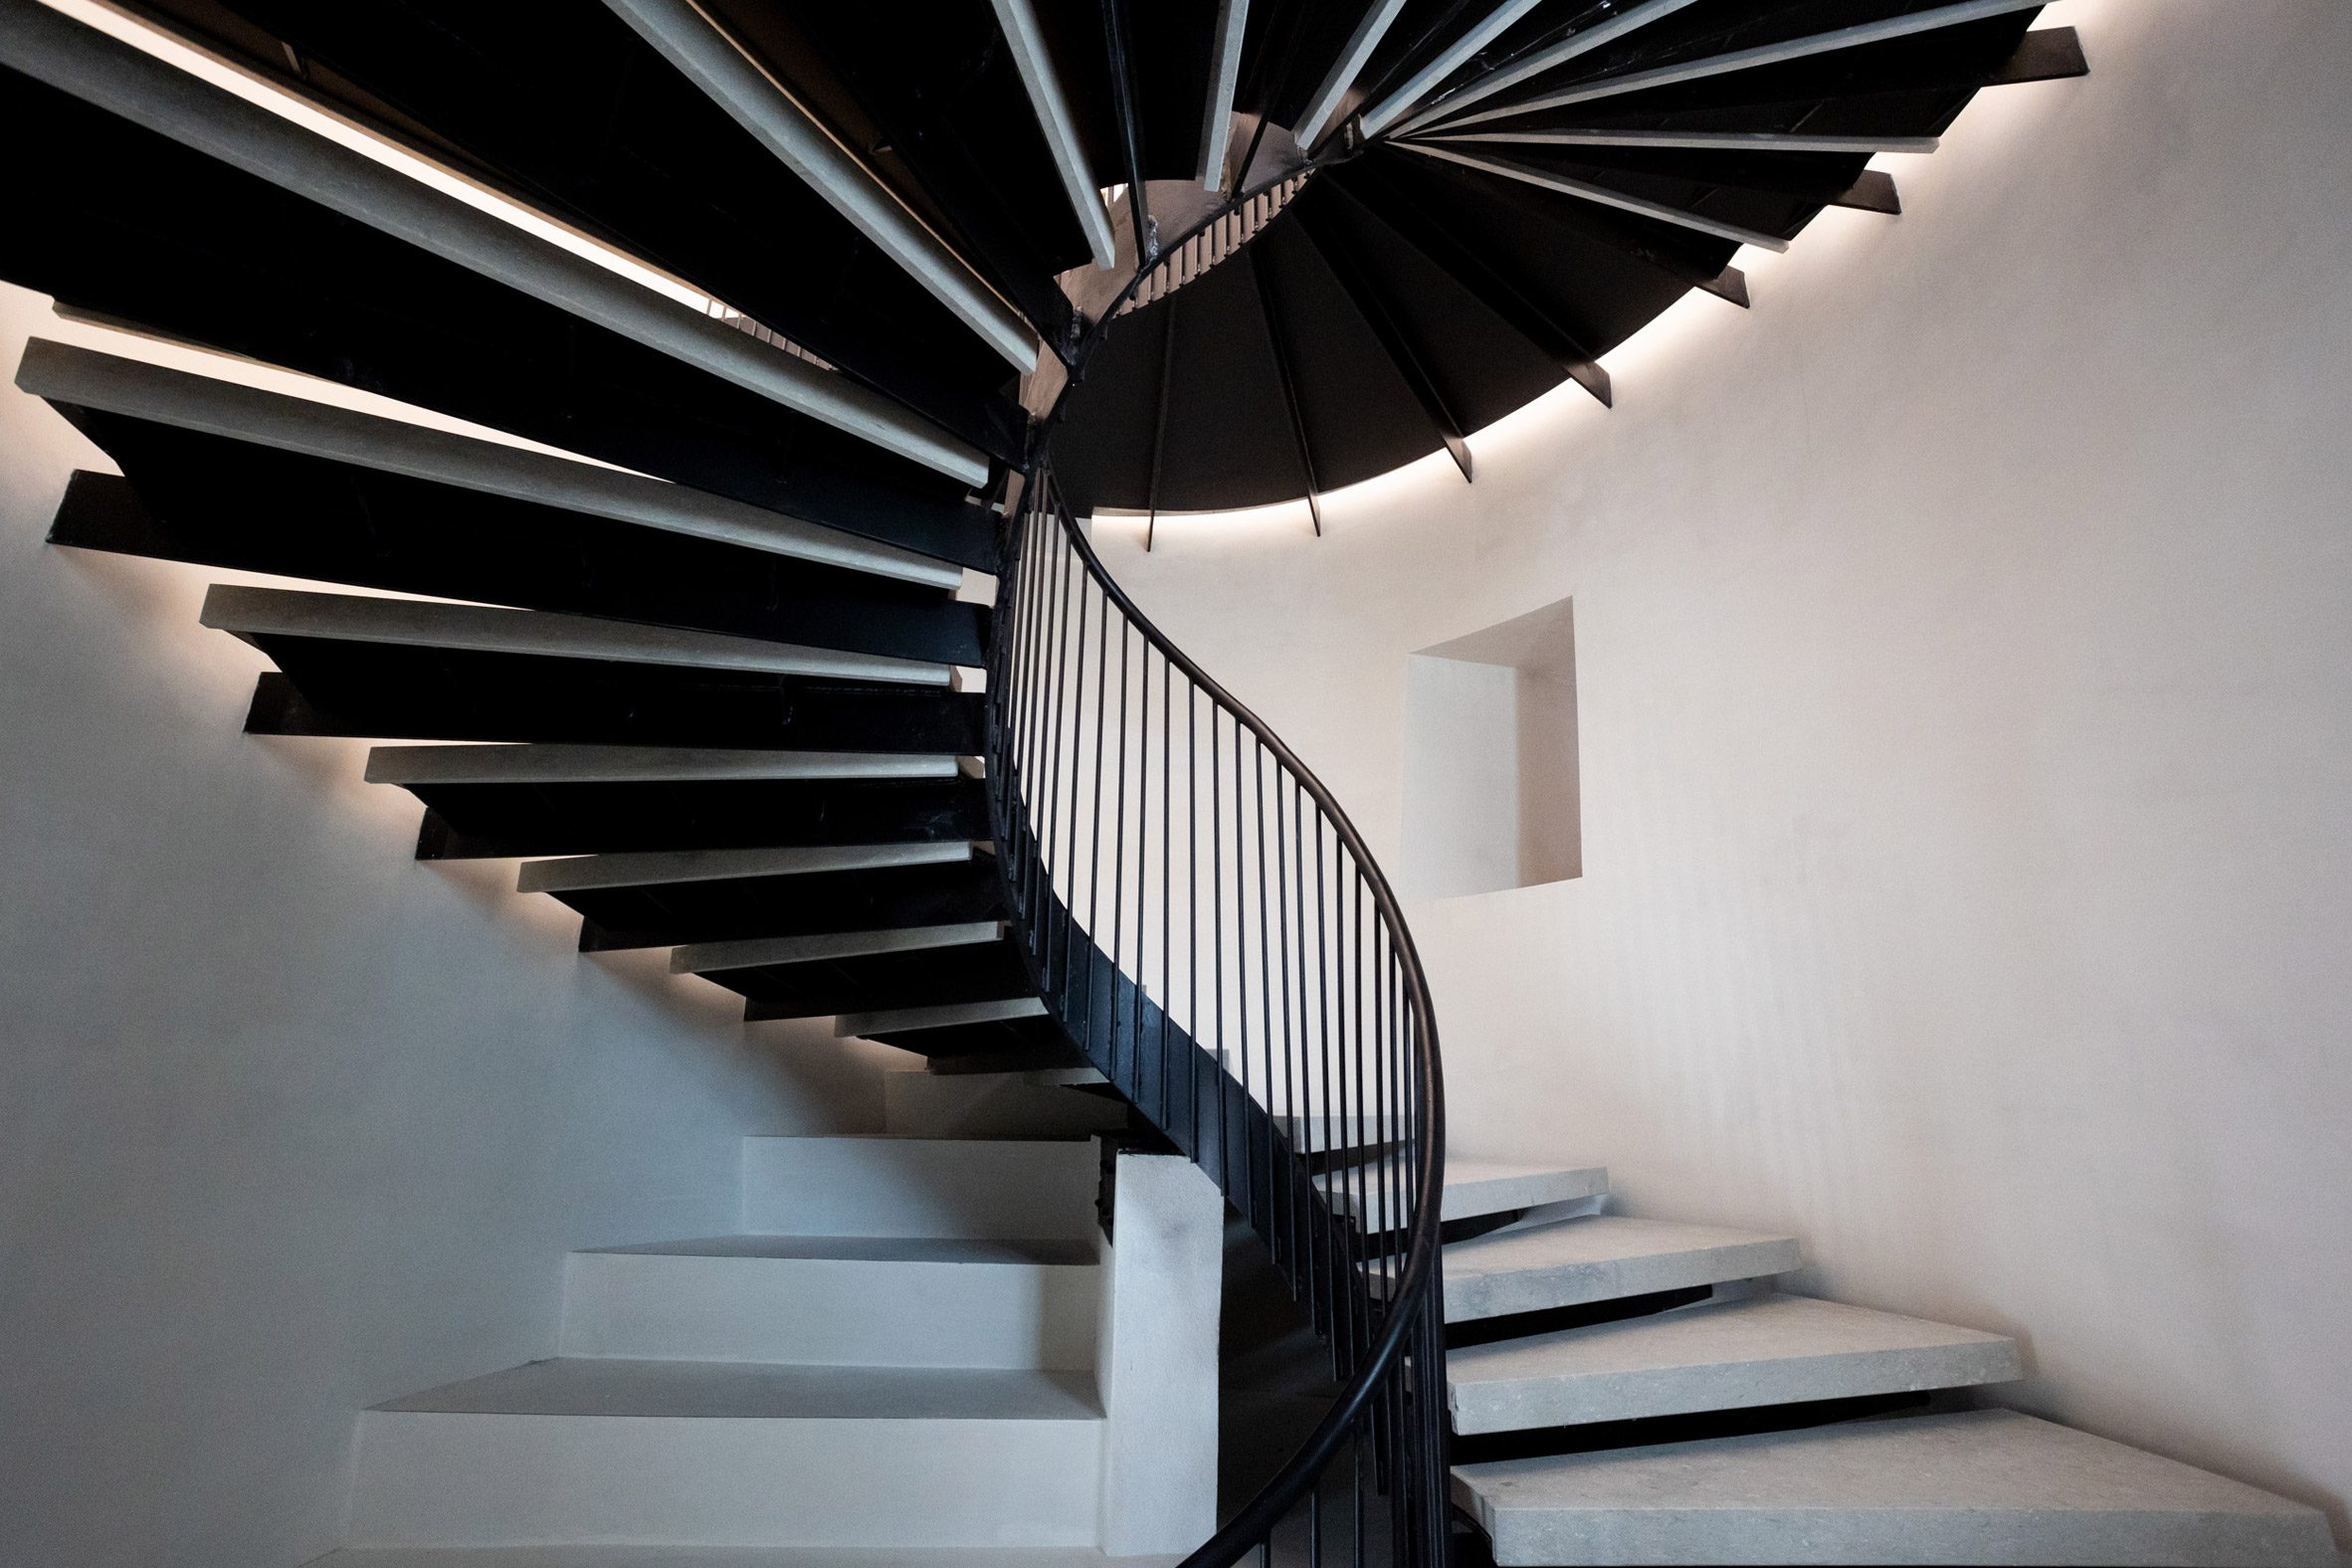 Stairs at Palazzo Diedo